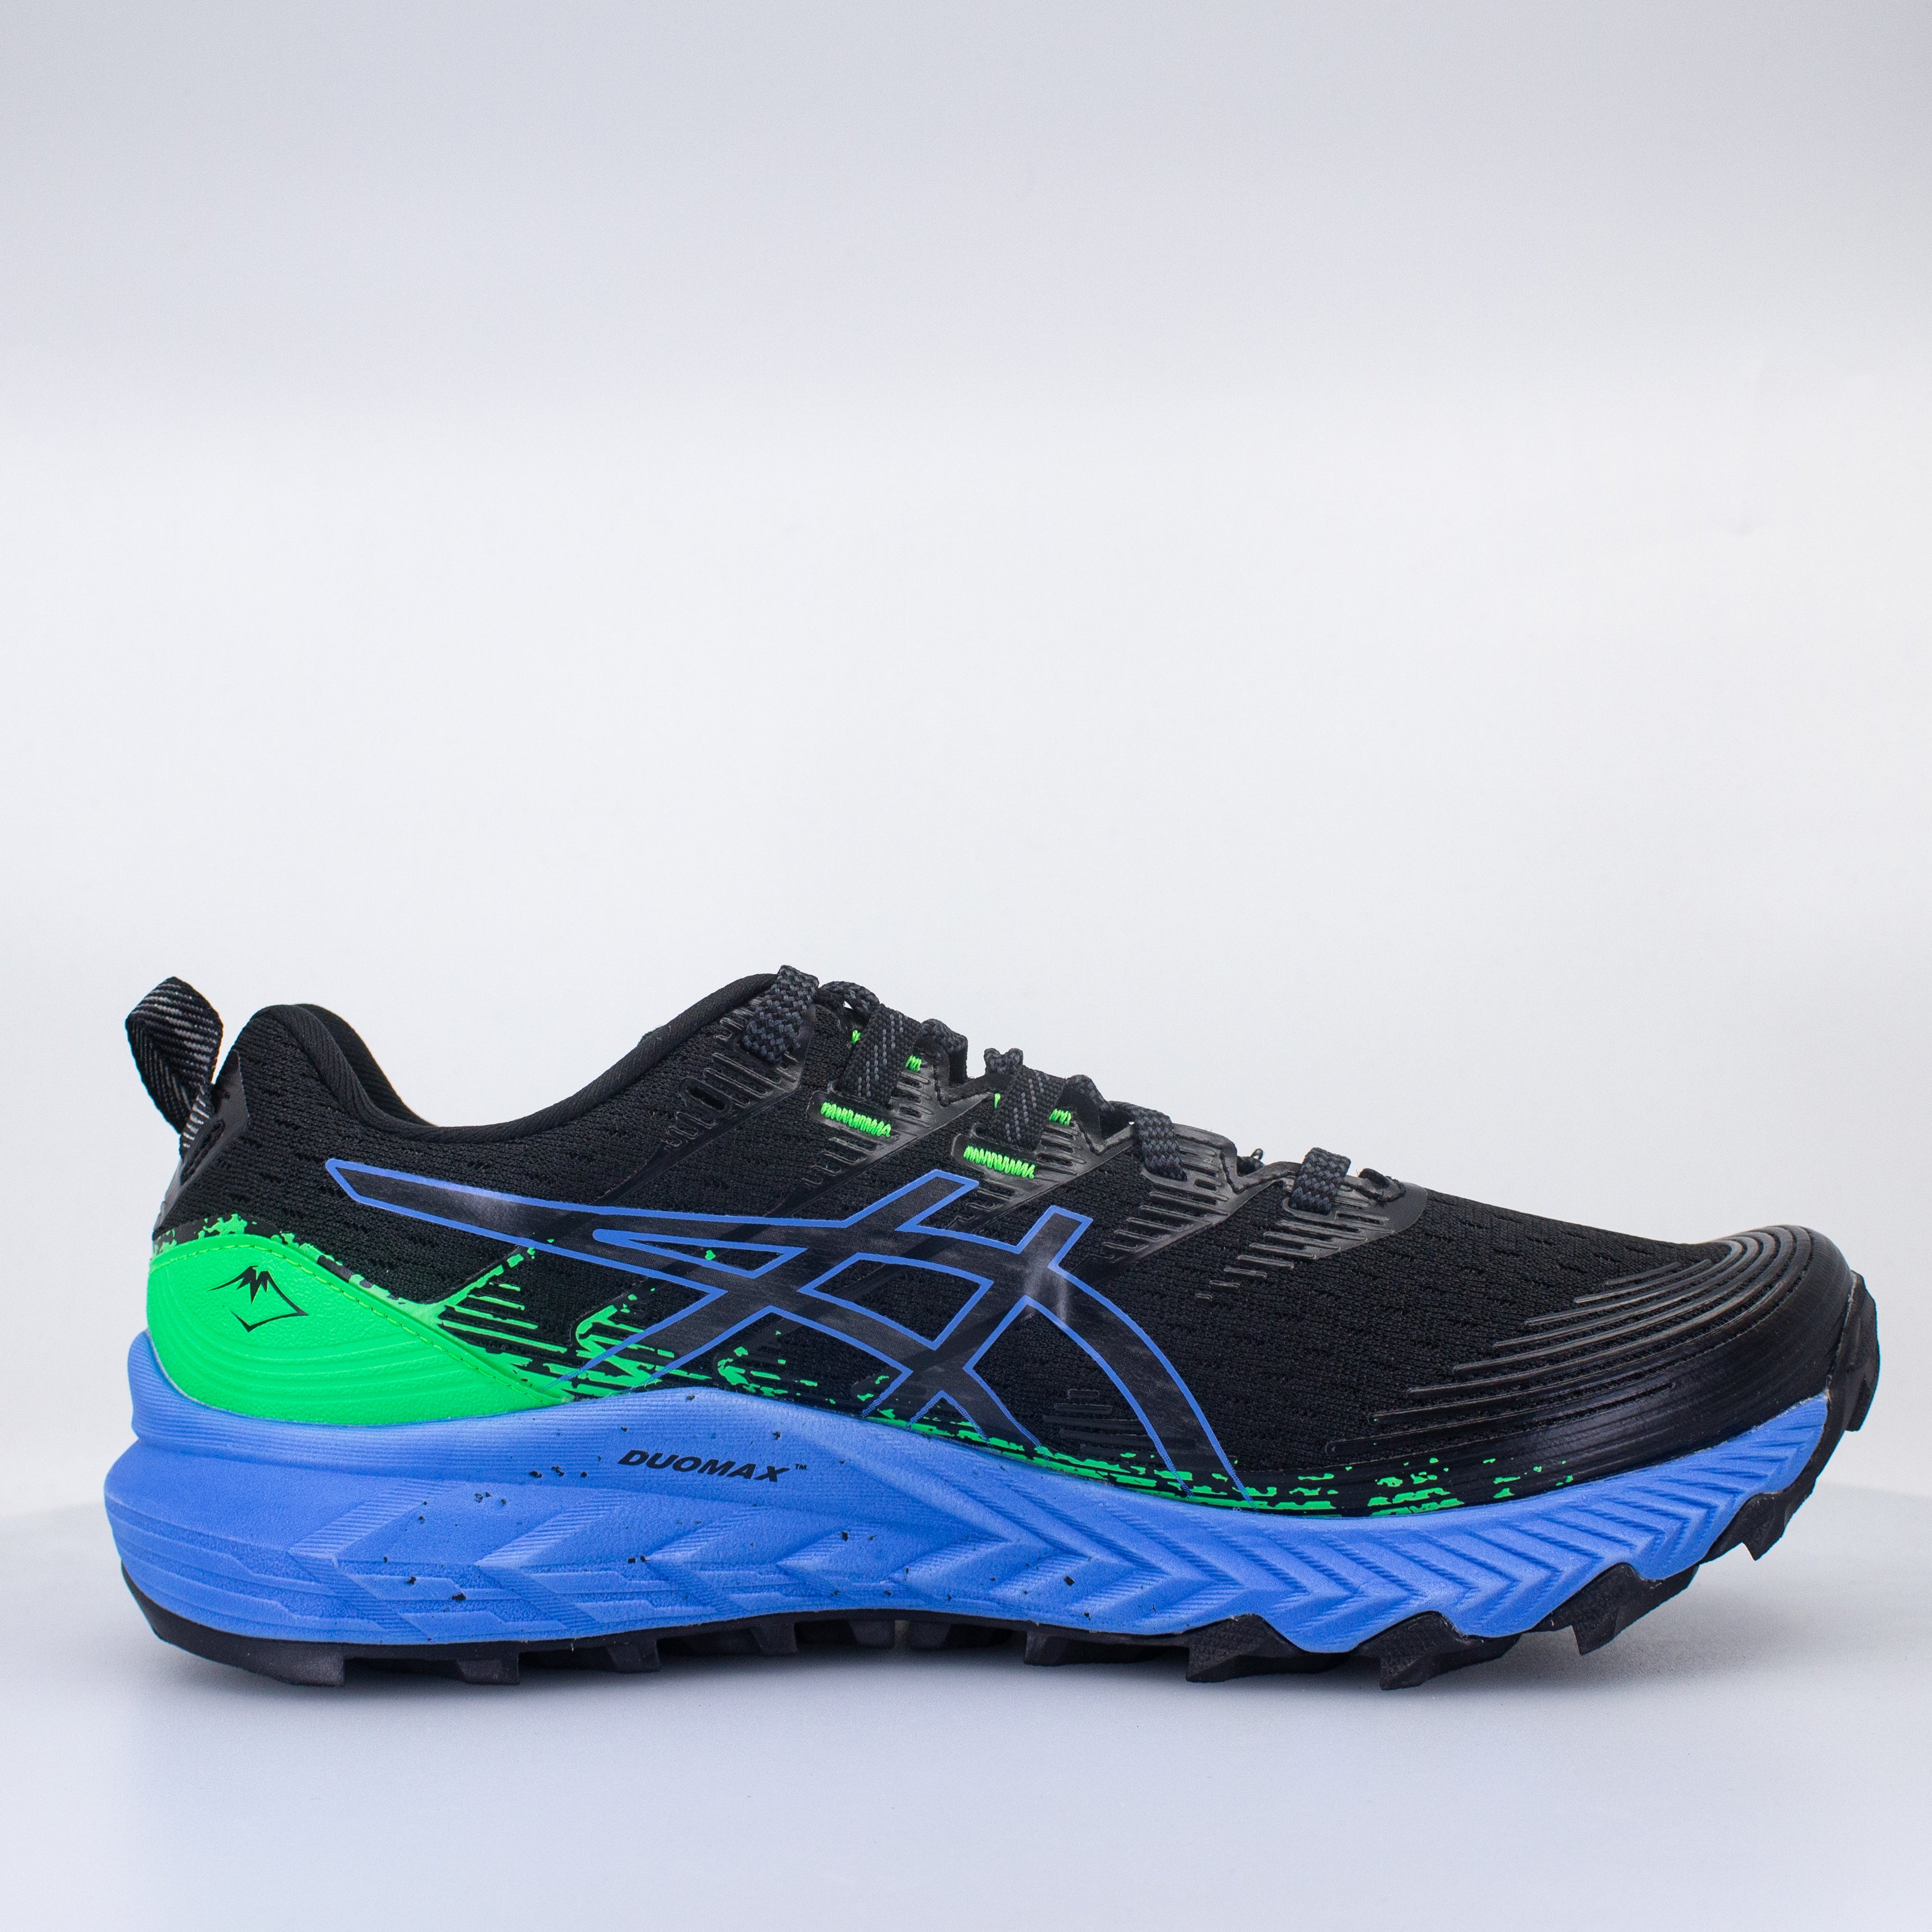 Men's GEL-TRABUCO 10, Black/Shocking Orange, Trail Running Shoes